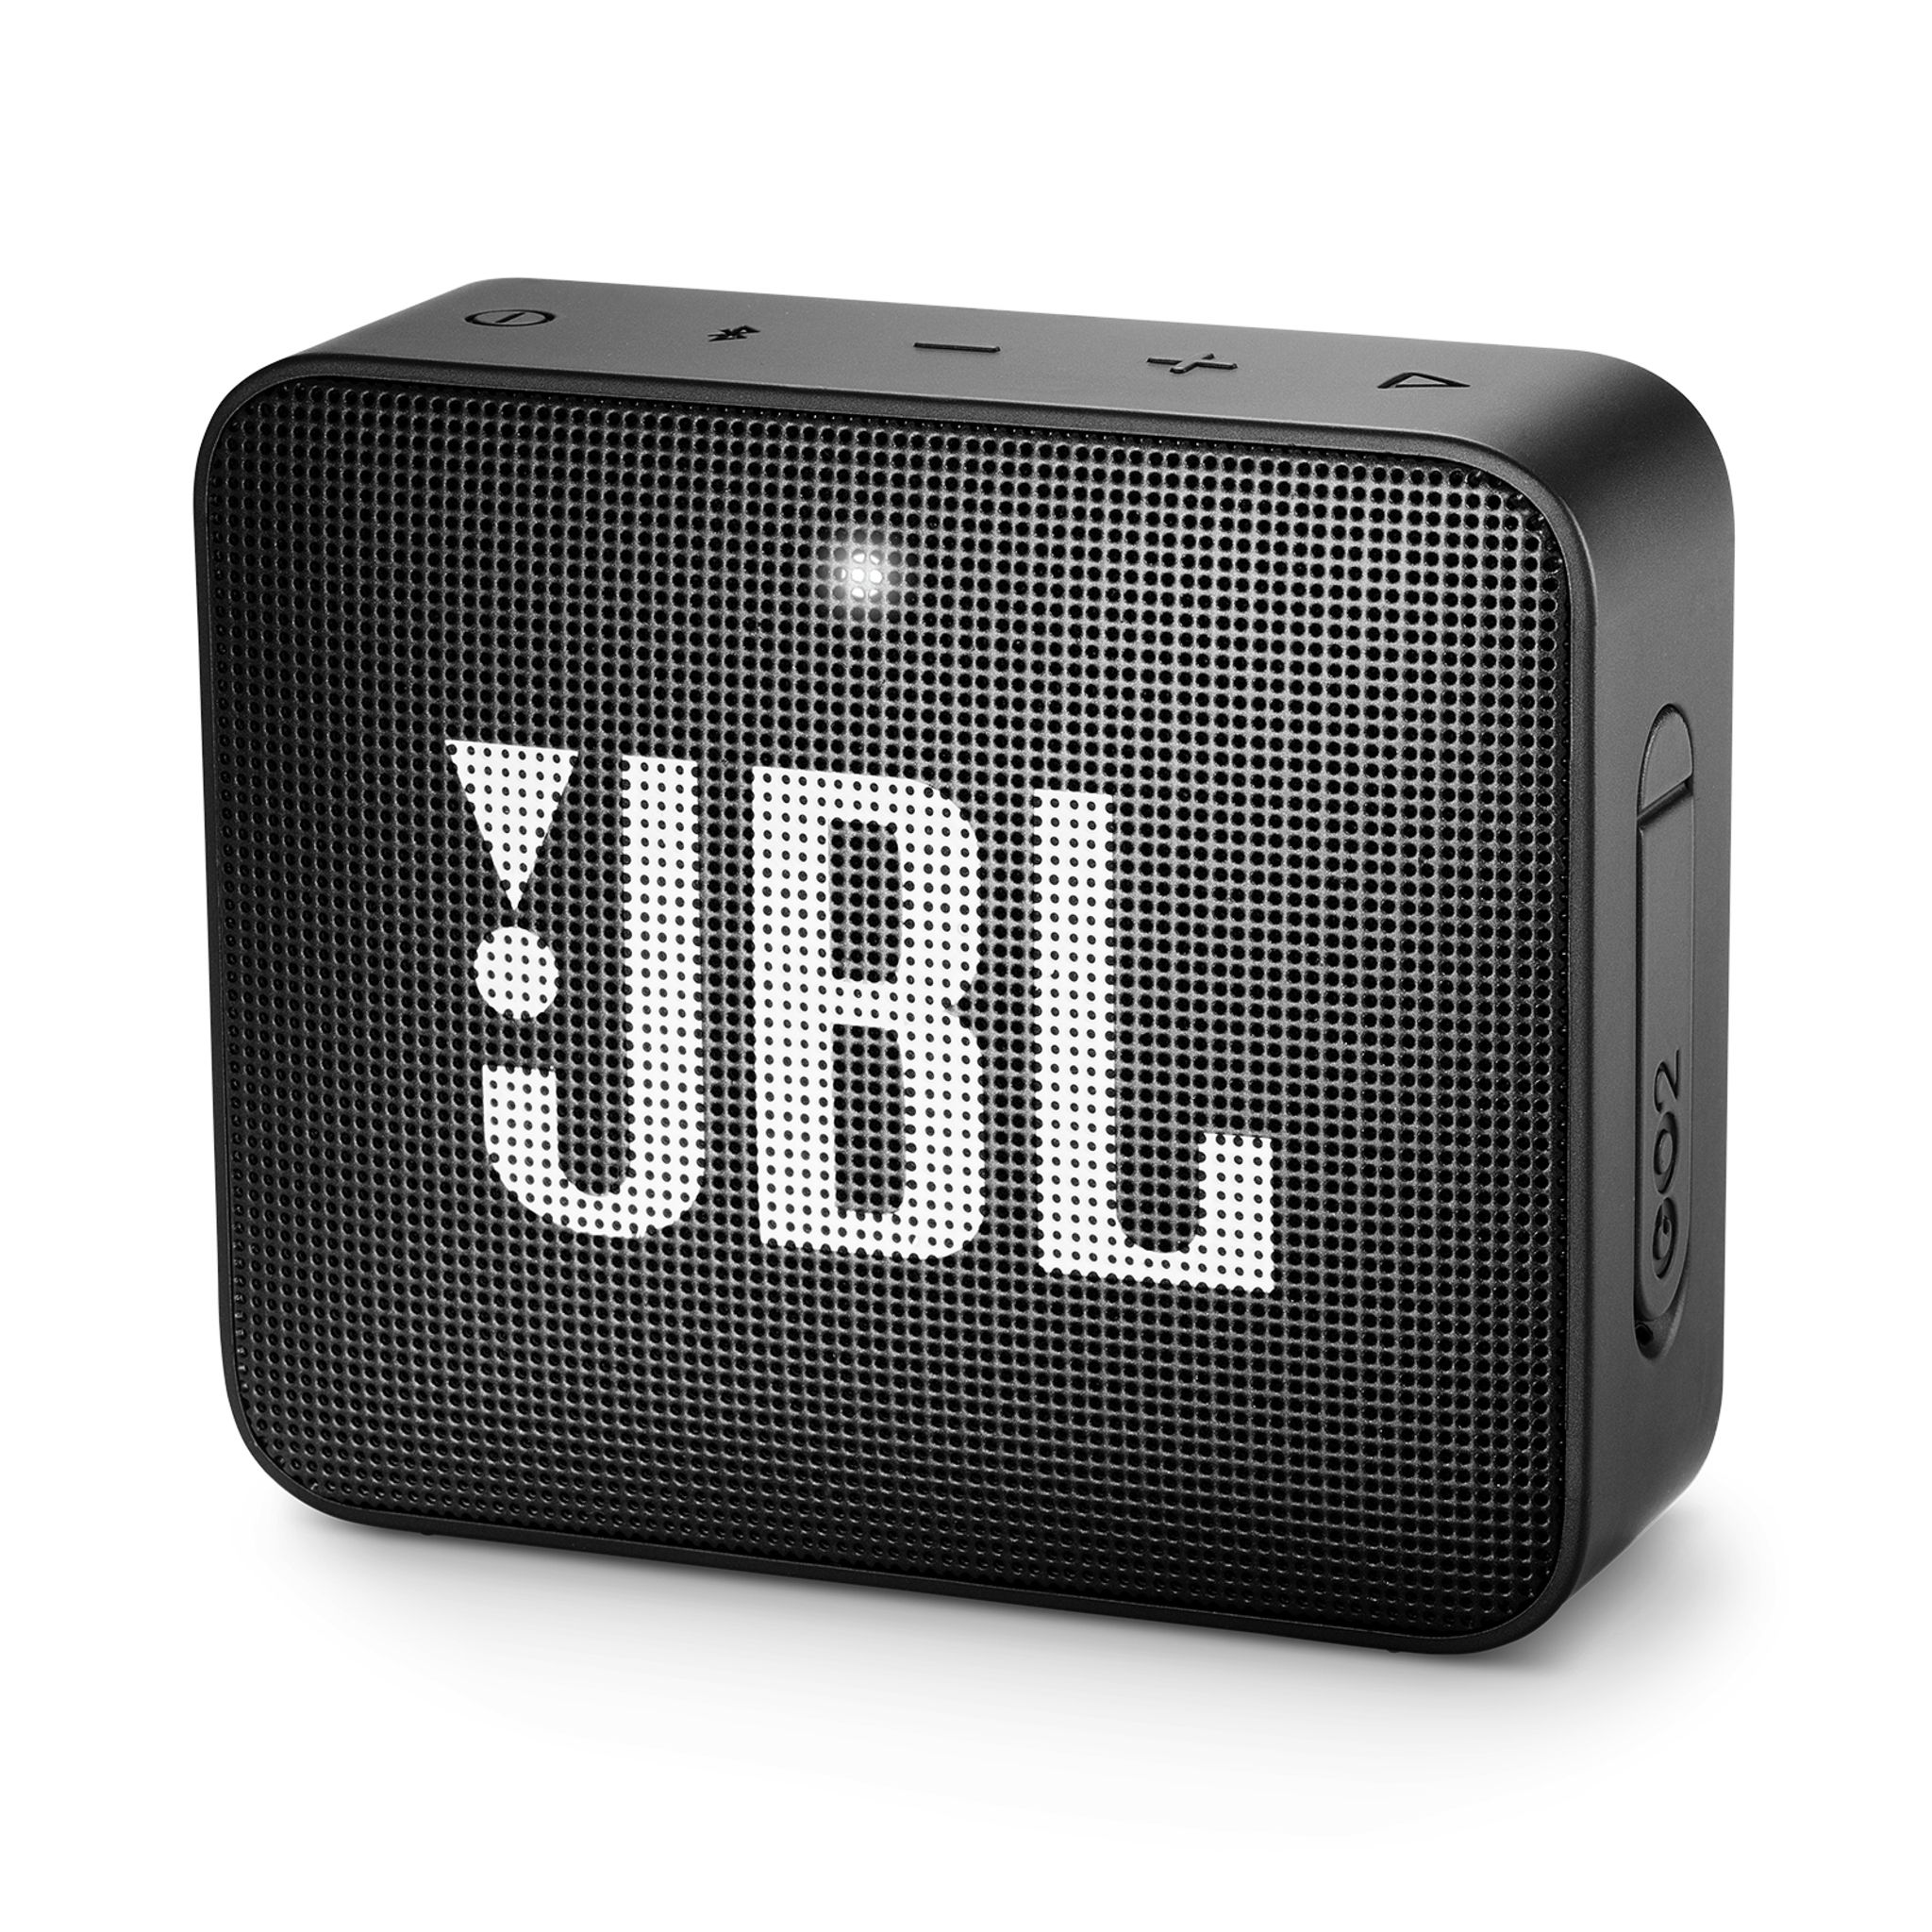 Promo ENCEINTE PORTABLE JBL CHARGE ESSENTIAL 2 SON PRO ORIGINAL JBL PUISSANT  : 30 WATTS RMS! Etanche (IPX7) chez Auchan